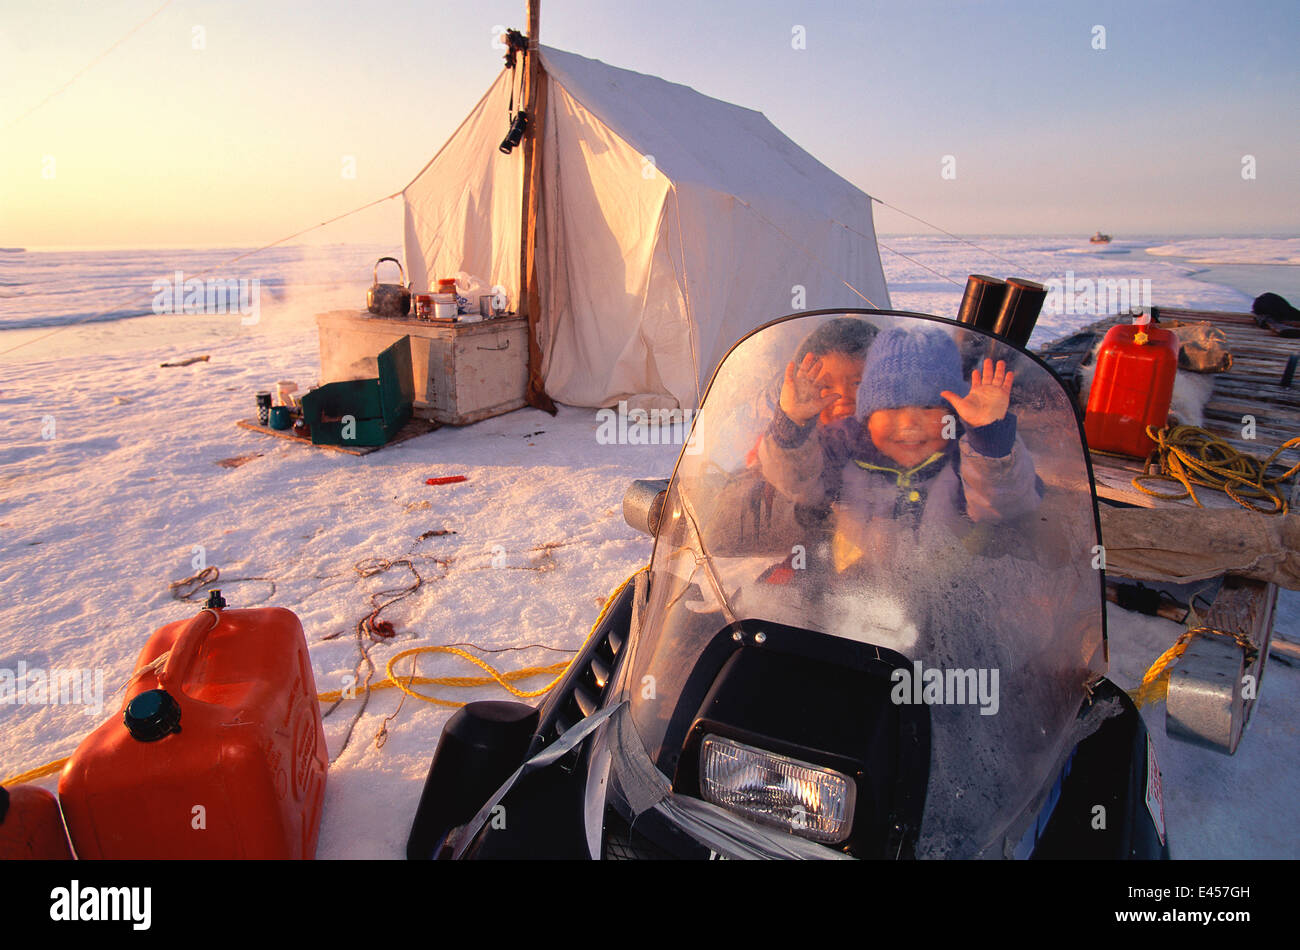 Bambini Inuit presso il cacciatore camp site, Isola Baffin, Nunavut, Canada. Nataniel & Goulvan Foto Stock